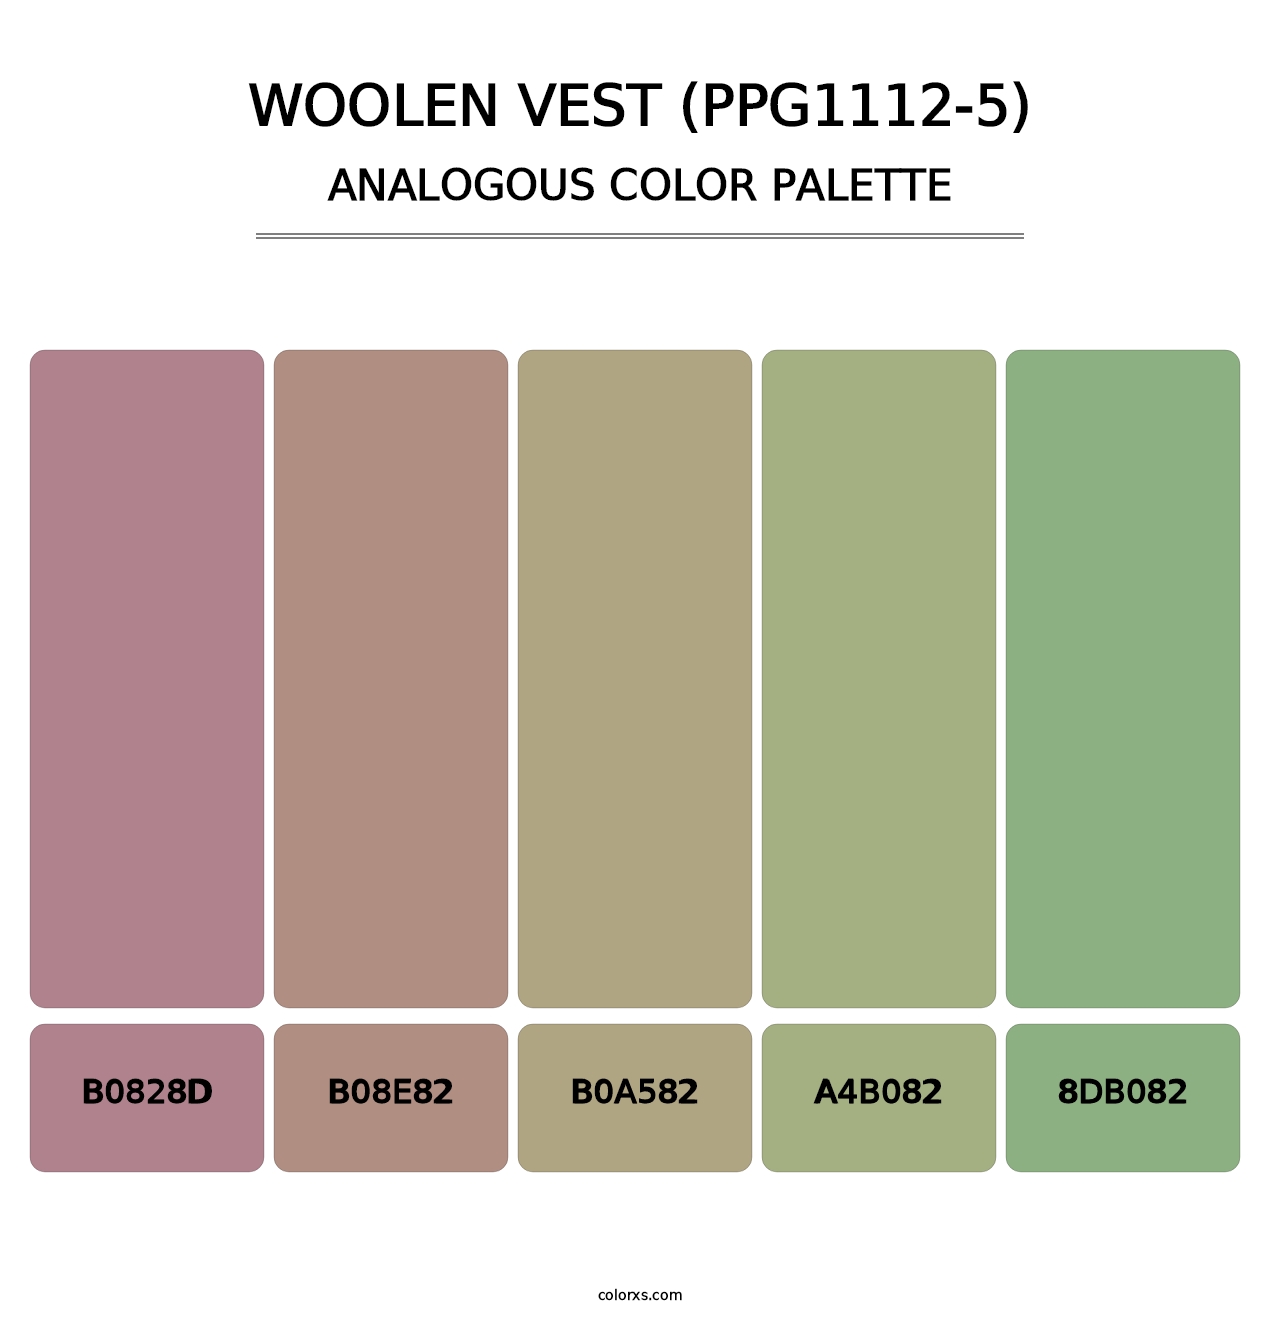 Woolen Vest (PPG1112-5) - Analogous Color Palette